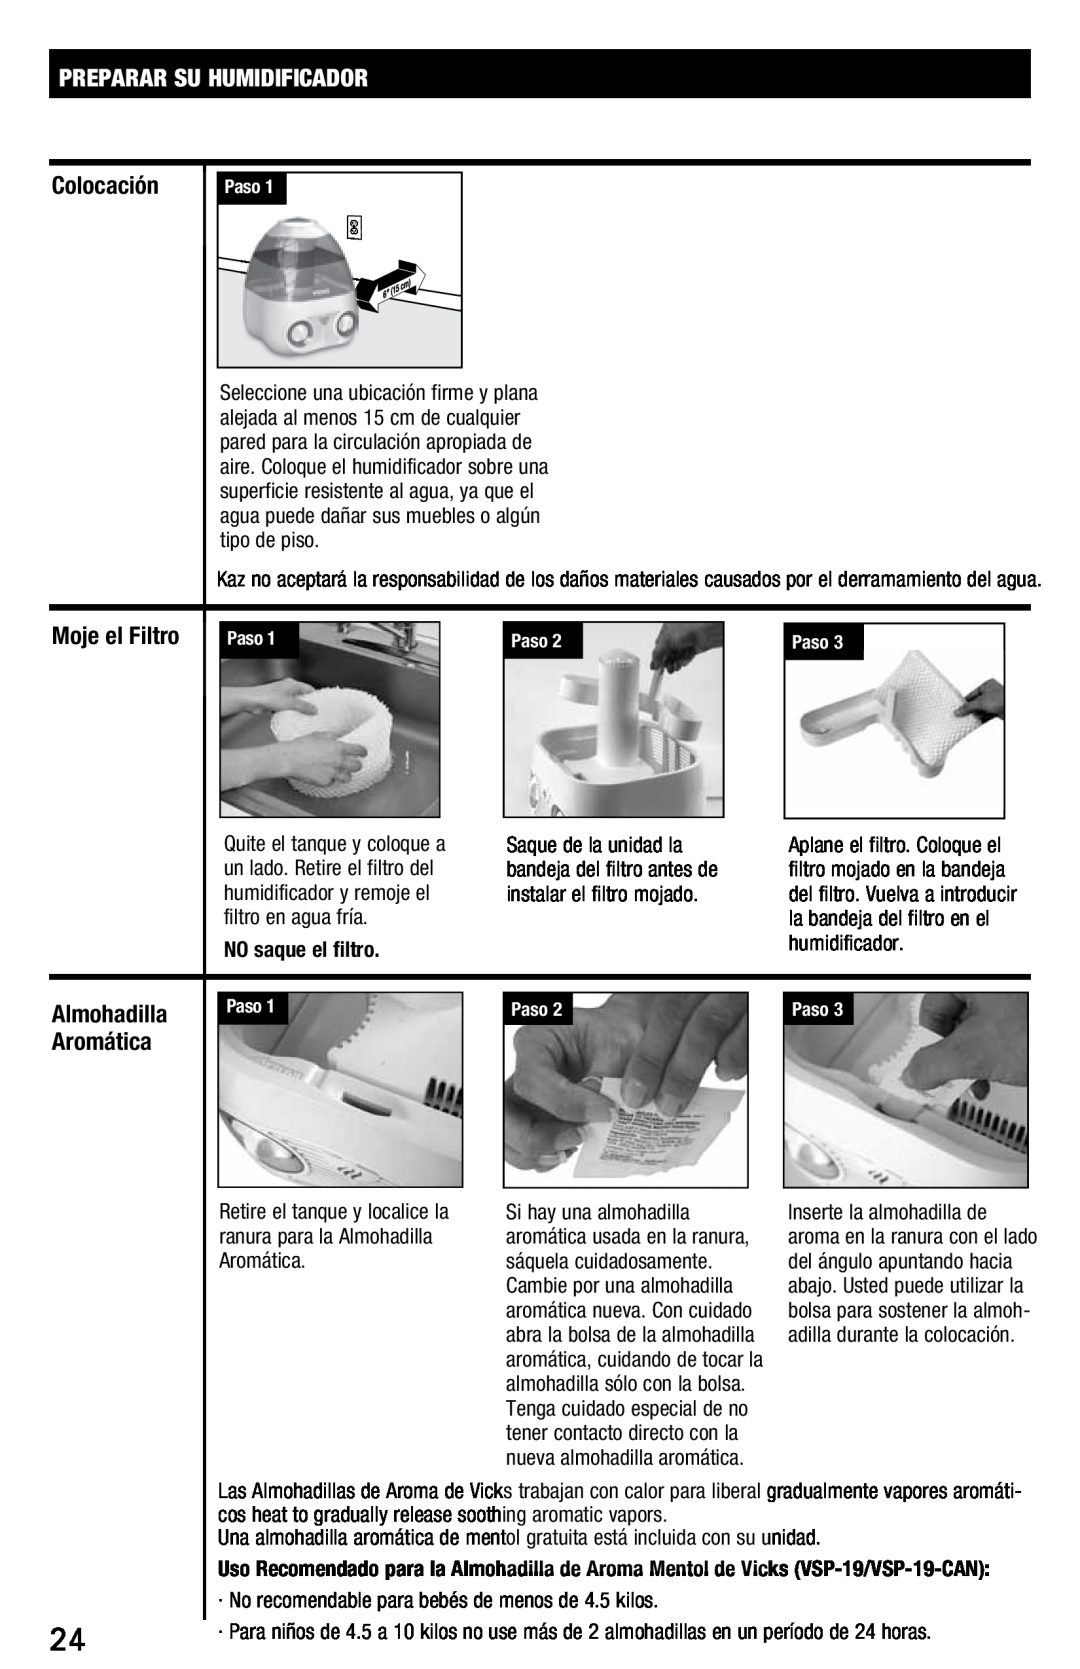 Vicks V3700 manual Preparar Su Humidificador, Colocación, Moje el Filtro, Almohadilla, Aromática, NO saque el filtro 